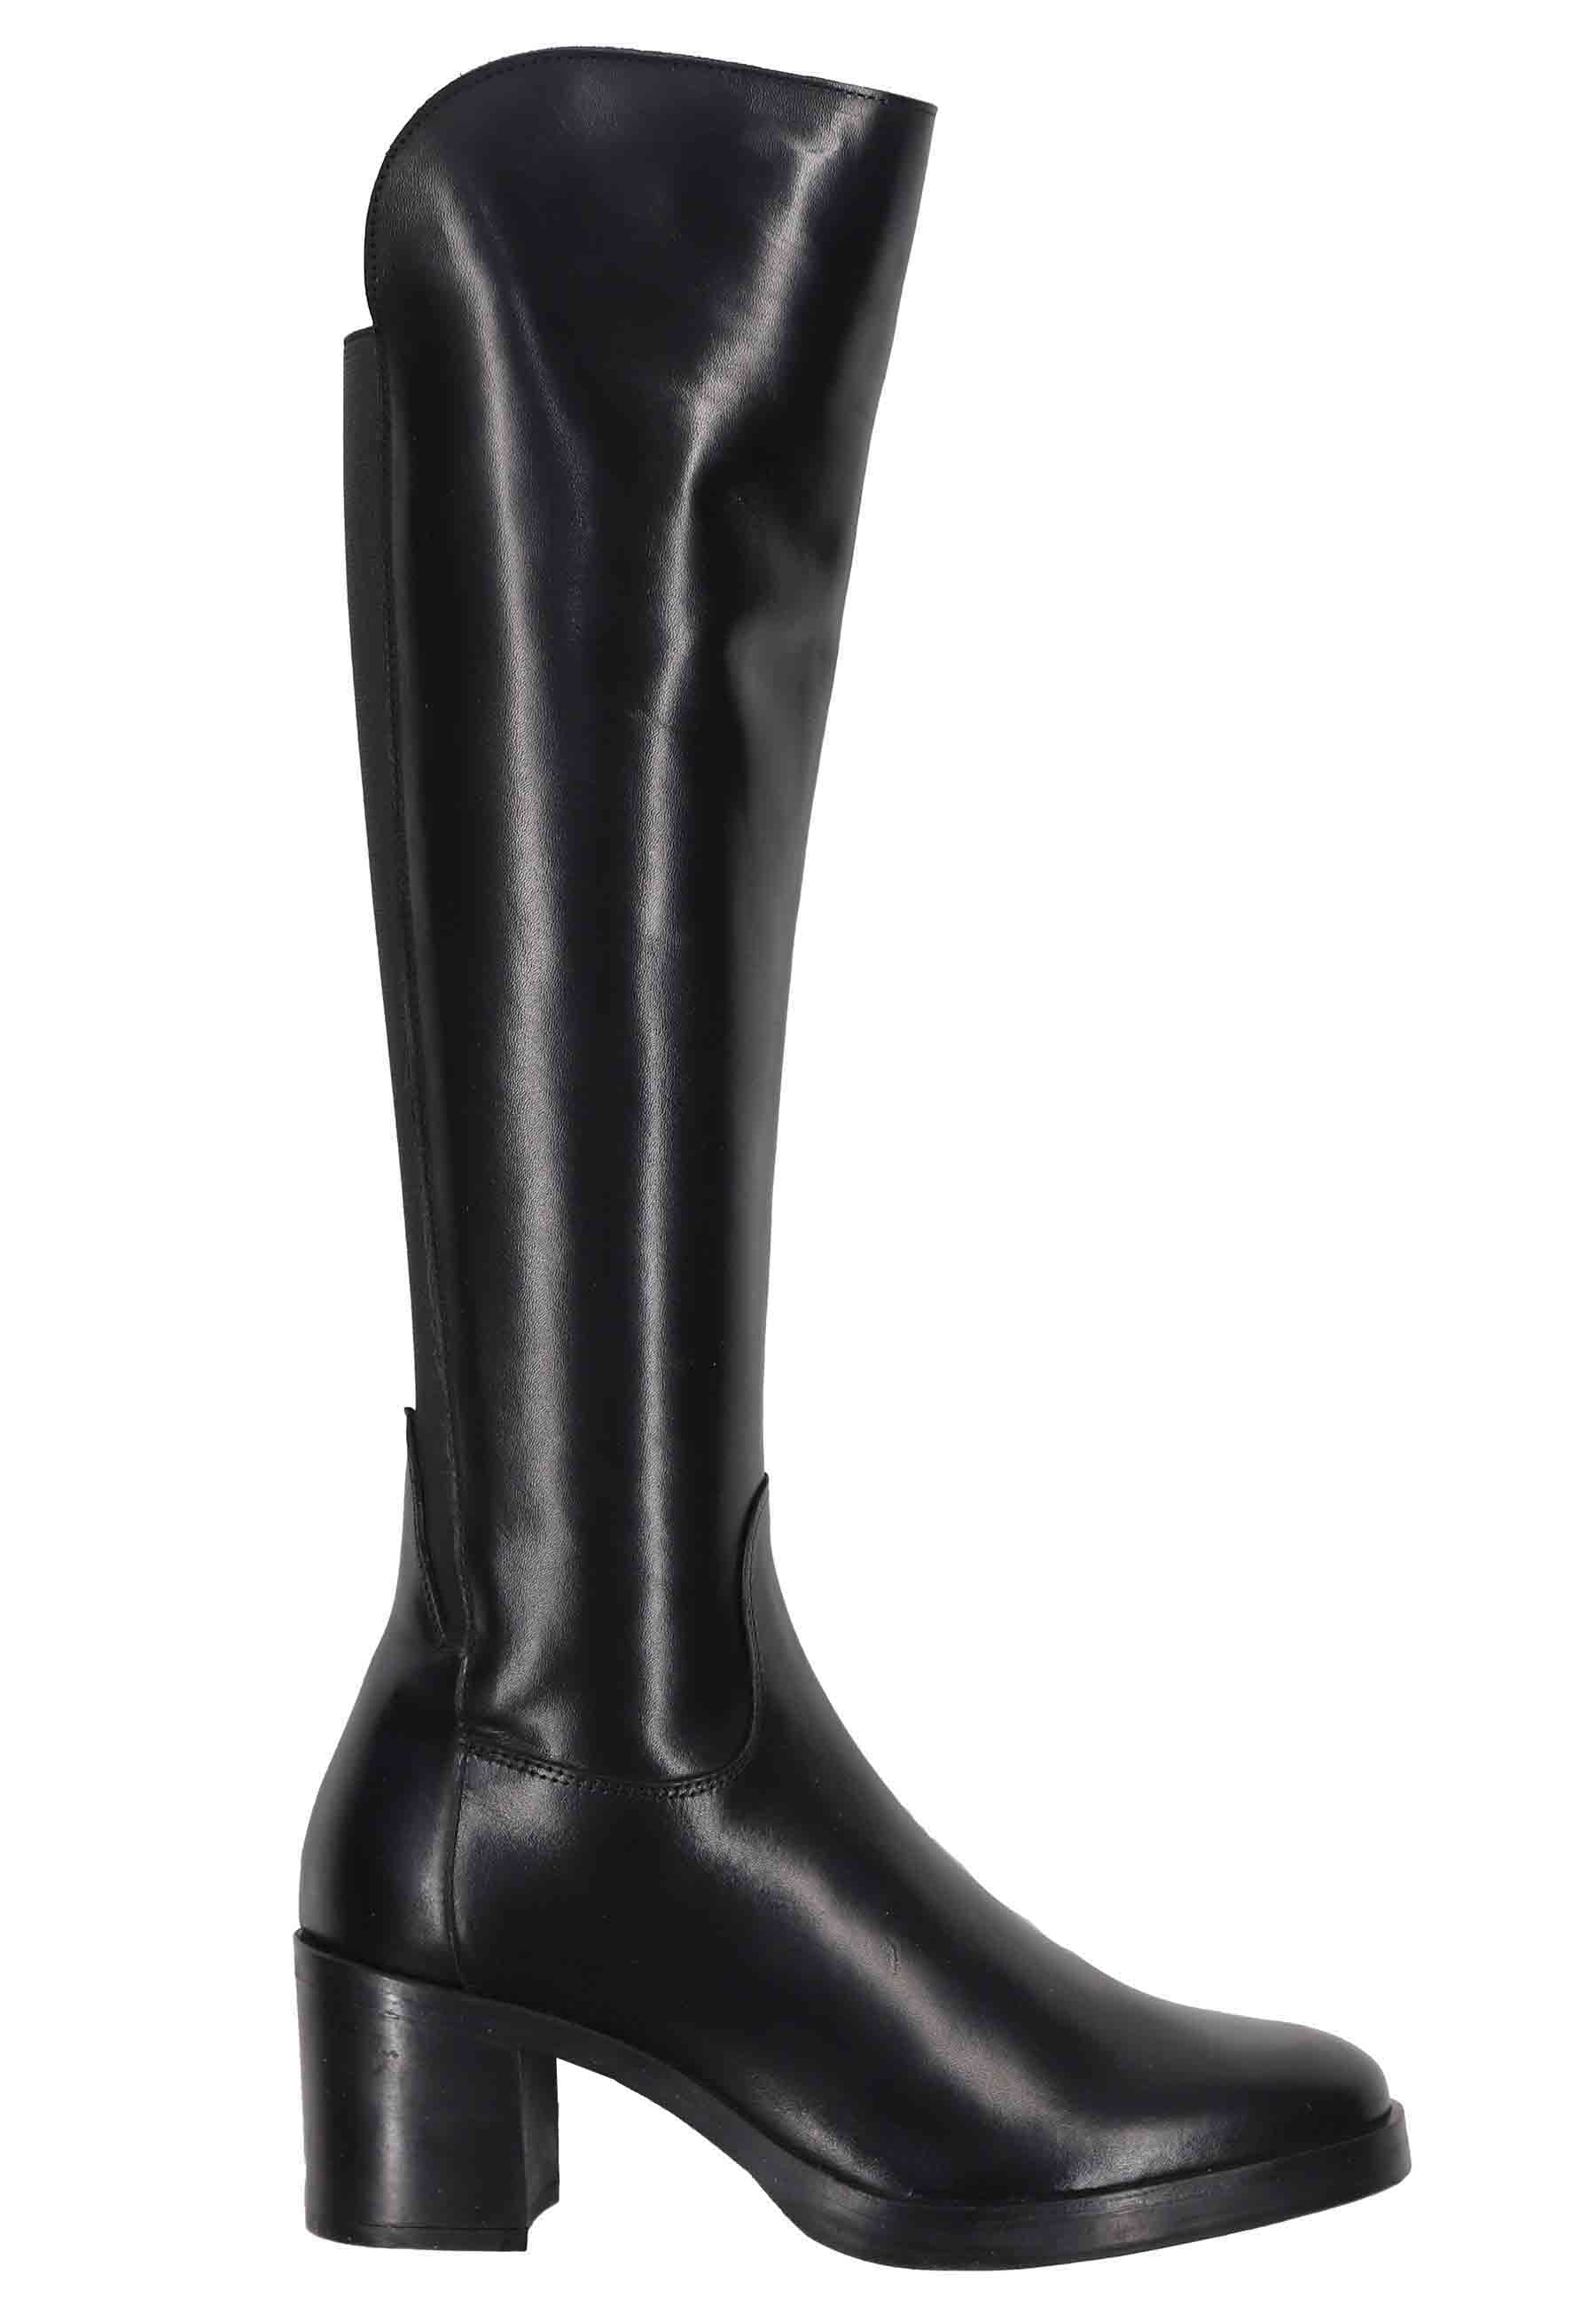 Boots femme en cuir noir avec guêtres et bout rond